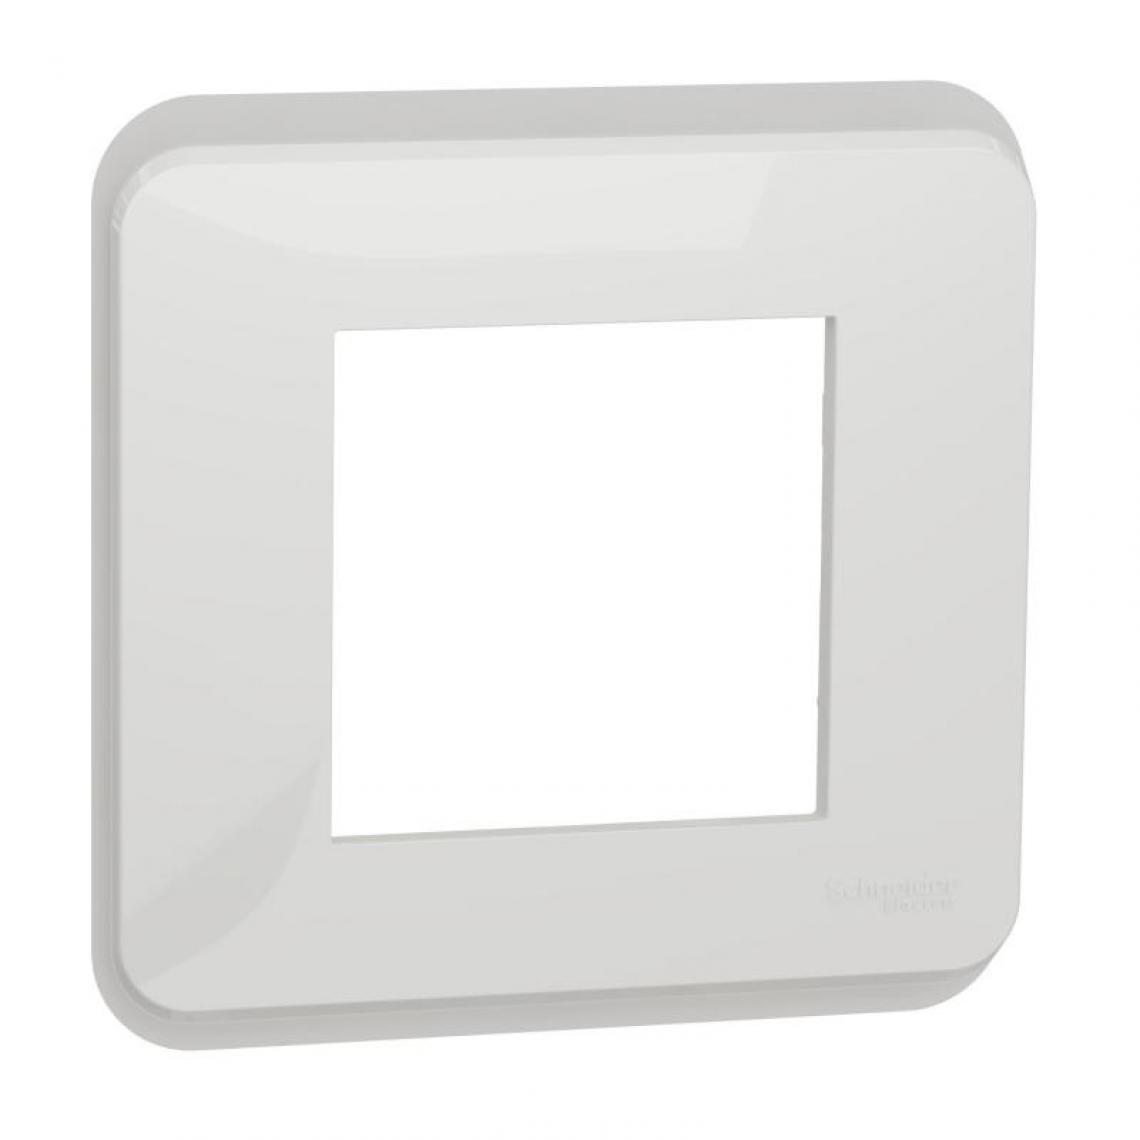 Schneider - Plaque de finition Unica 4 postes blanc - Interrupteurs et prises étanches